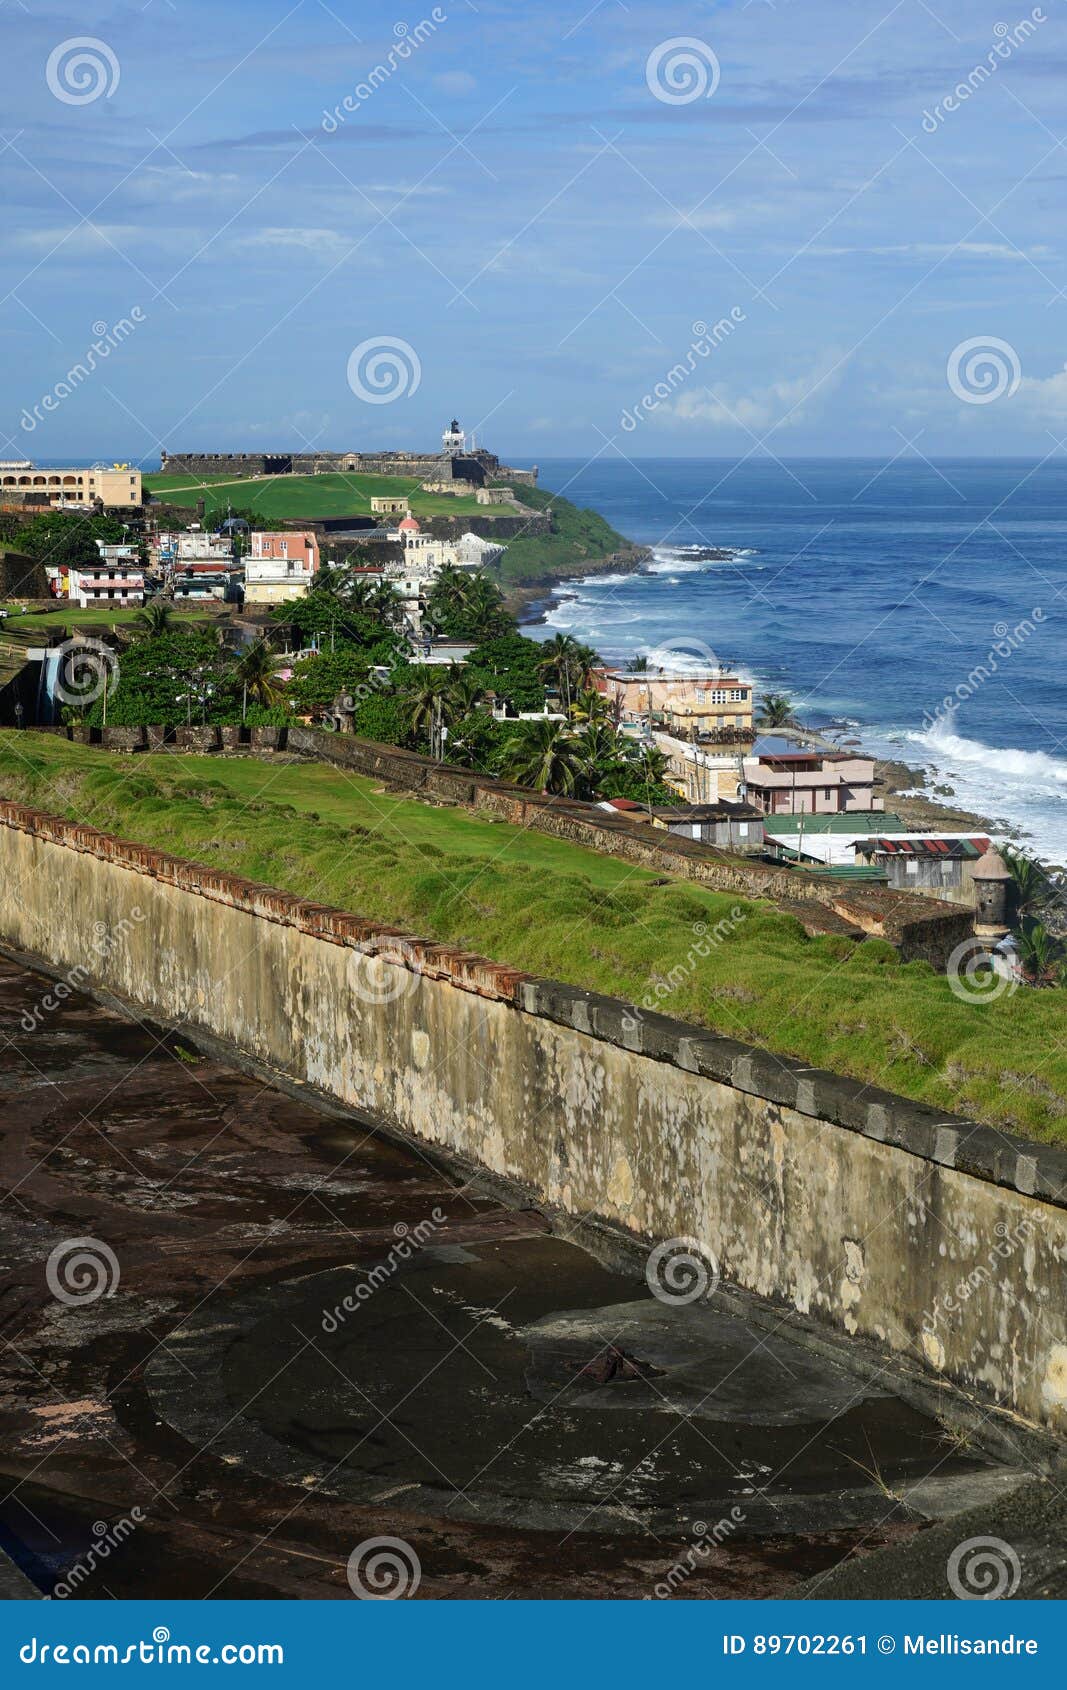 vertical view from castillo de san cristobal to san felipe del morro fortress, puerto rico